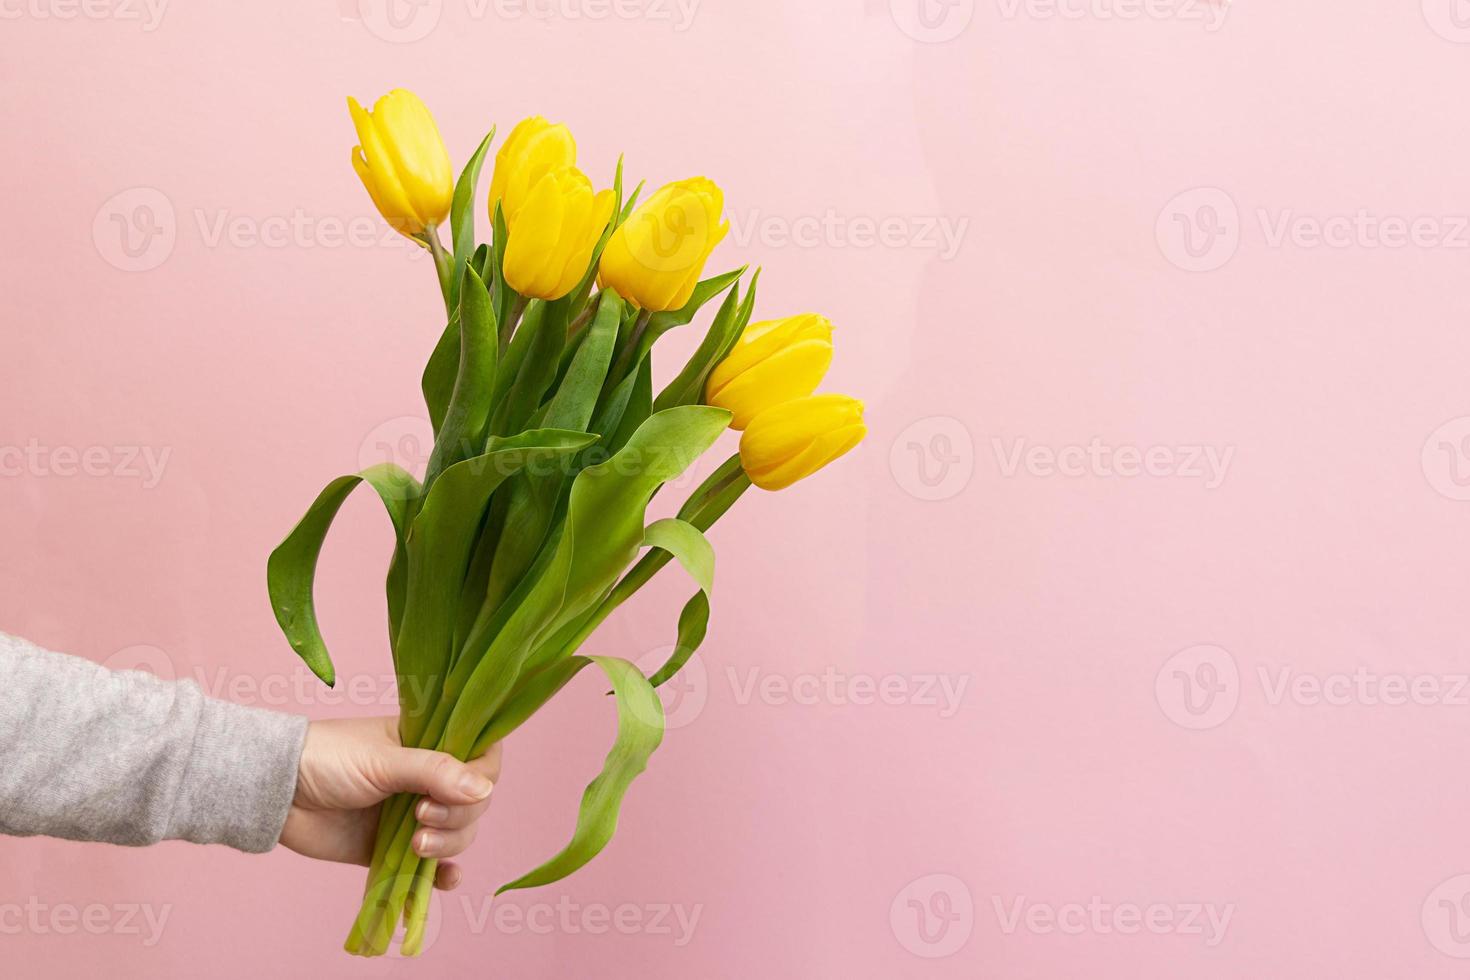 Frauenhand mit einem Strauß gelber Tulpen auf rosa Hintergrund foto